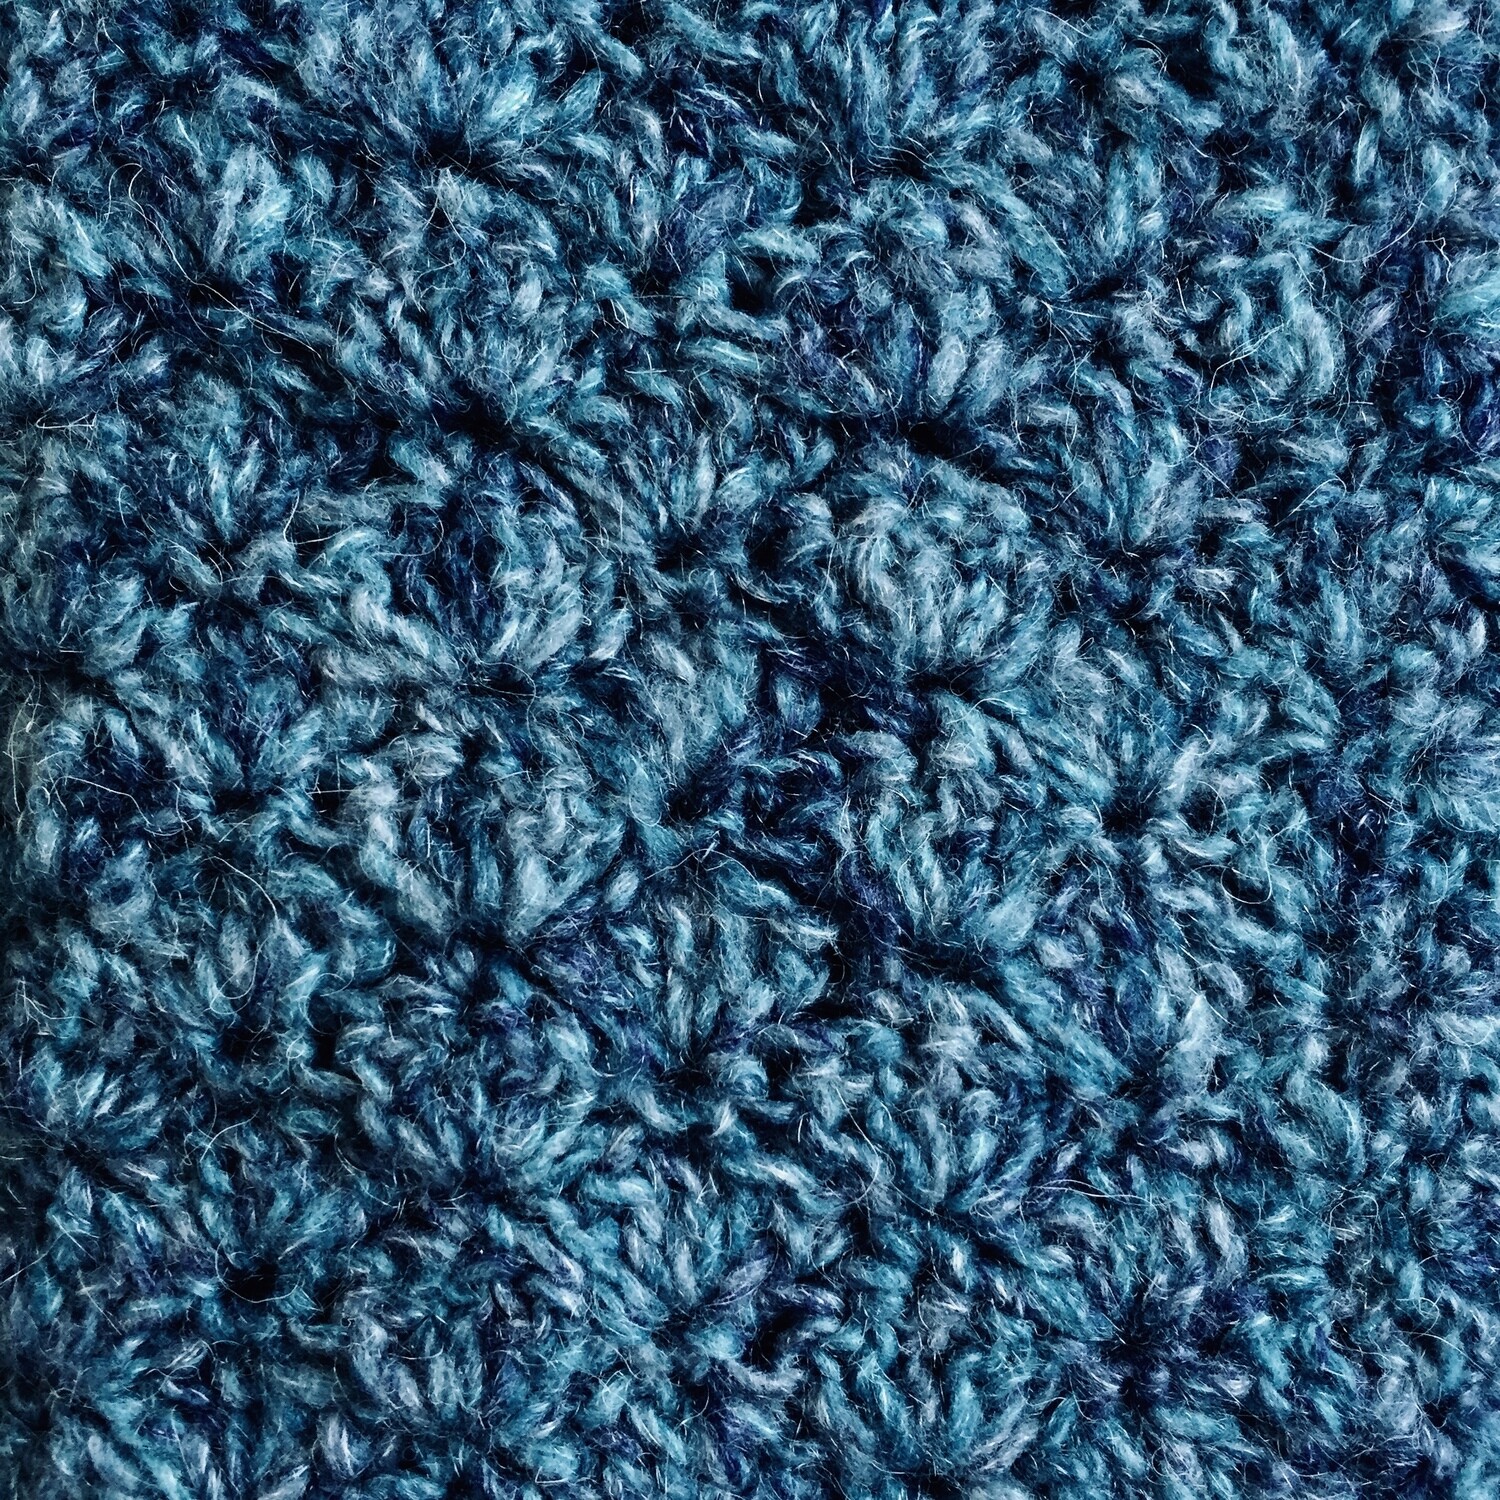 Mini Blanket: Blue/Navy Mohair